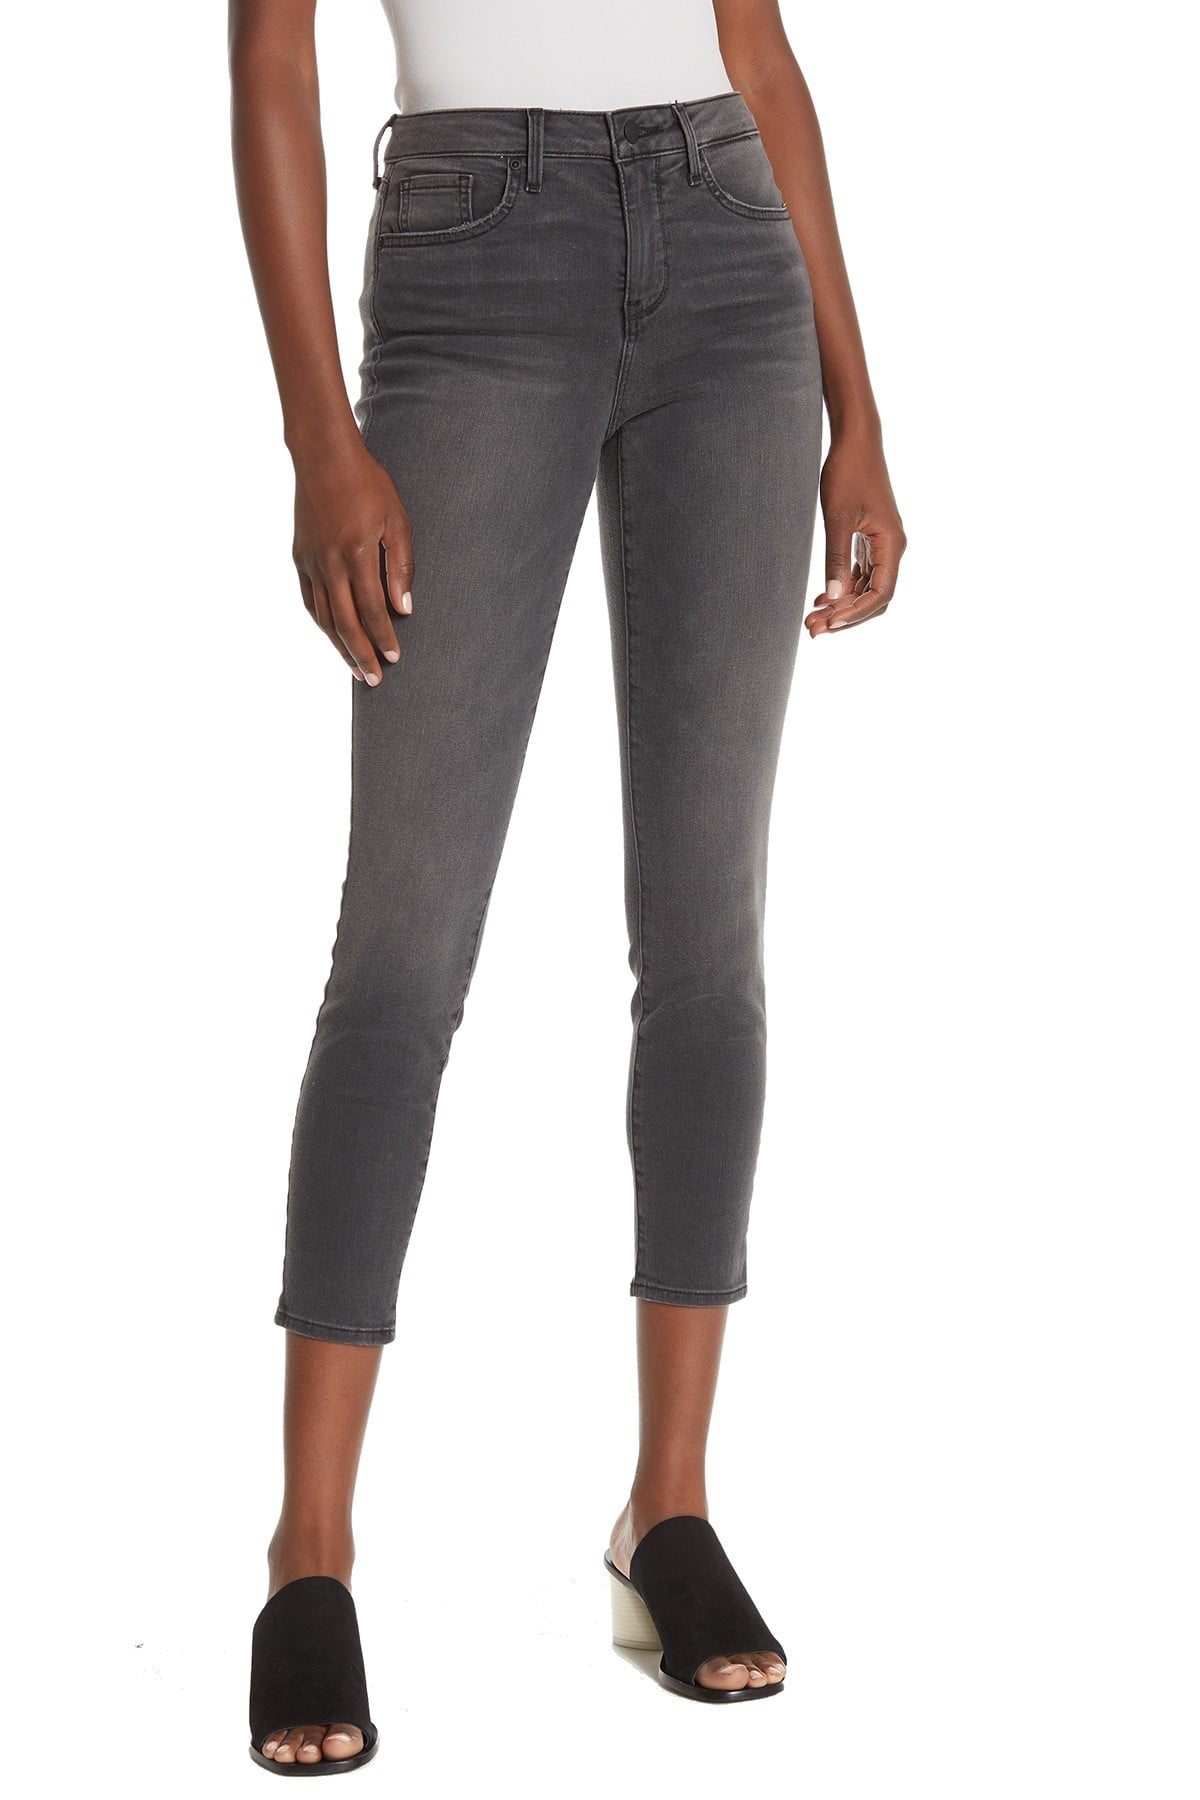 NYDJ - NYDJ Womens Ami Skinny Fit Jeans, grey, 12 - Walmart.com